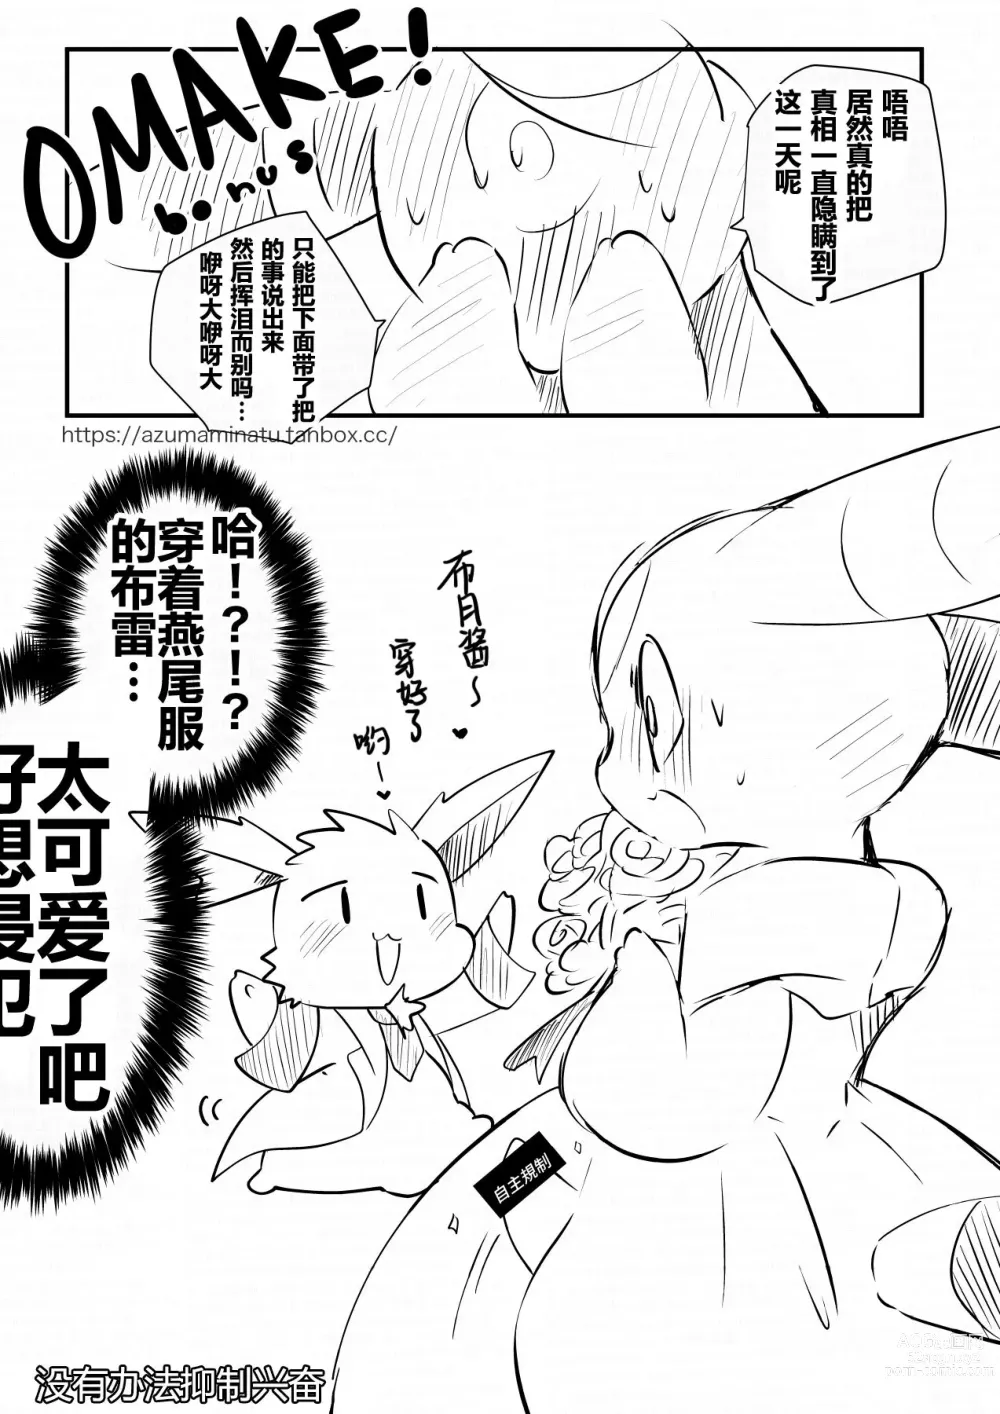 Page 5 of doujinshi 哪个人也想不到?布月和布雷的最终结果?的漫画